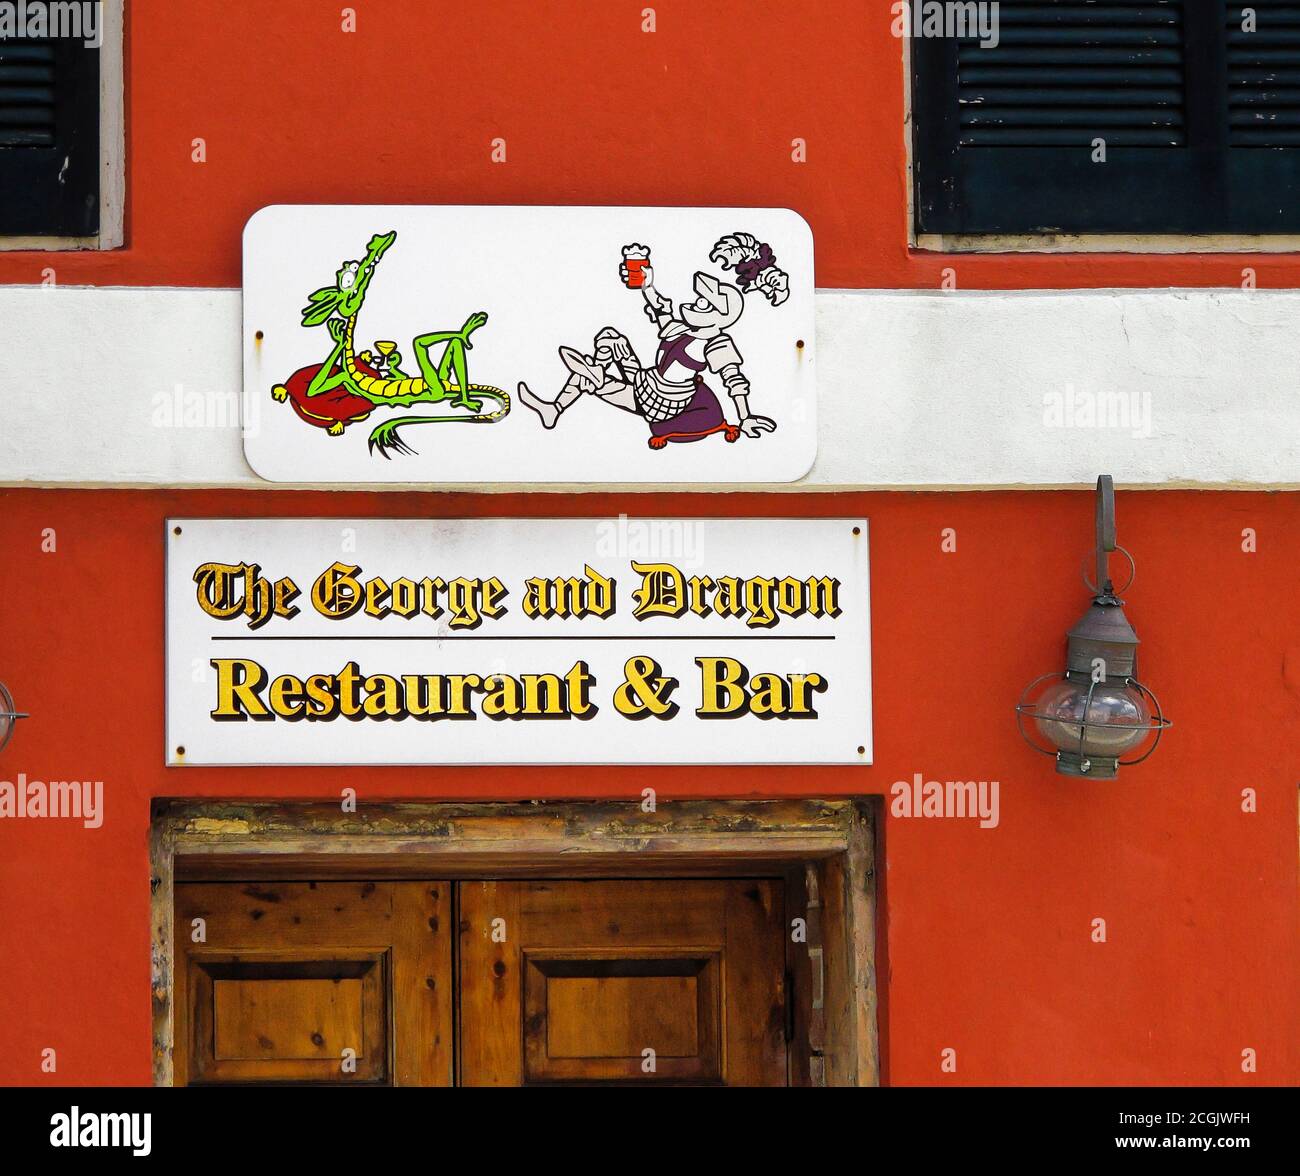 Restaurant et bar The George and Dragon, panneau au-dessus de la porte, dessin animé chevalier et dragon, bâtiment rouge, affaires, St. George, Bermudes Banque D'Images